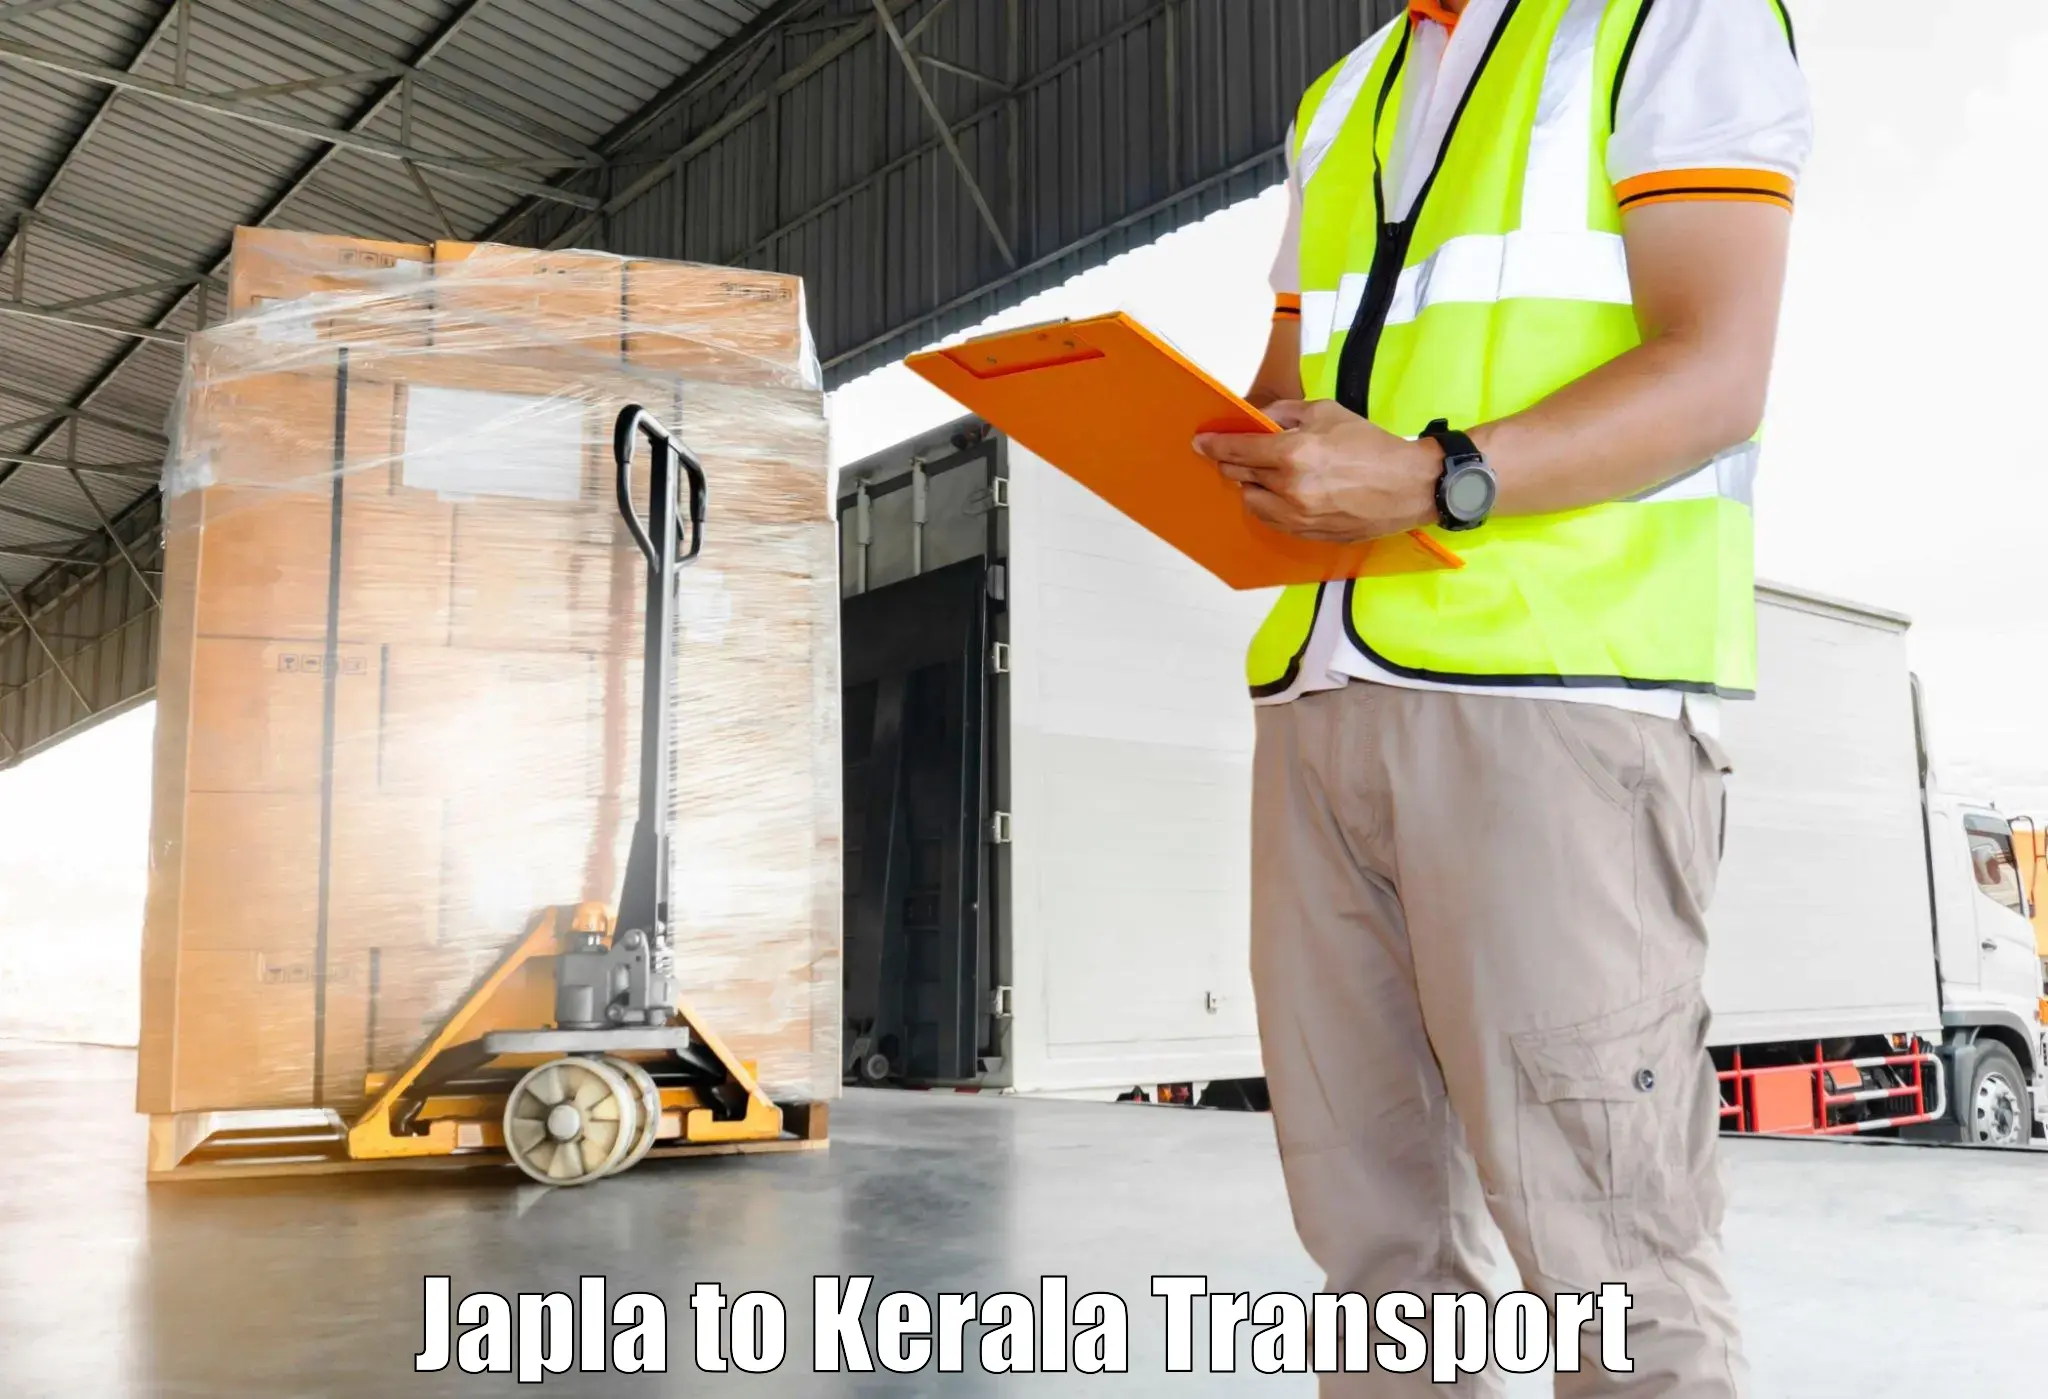 Goods delivery service Japla to Kiliyanthara